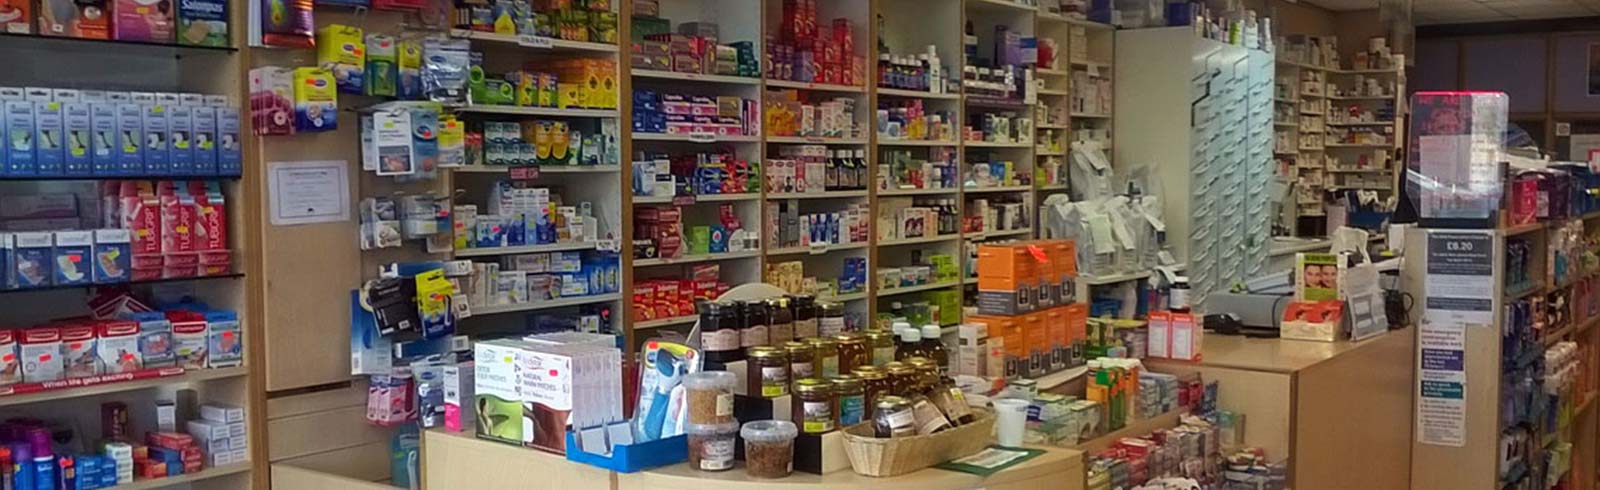 Pharmacy inside